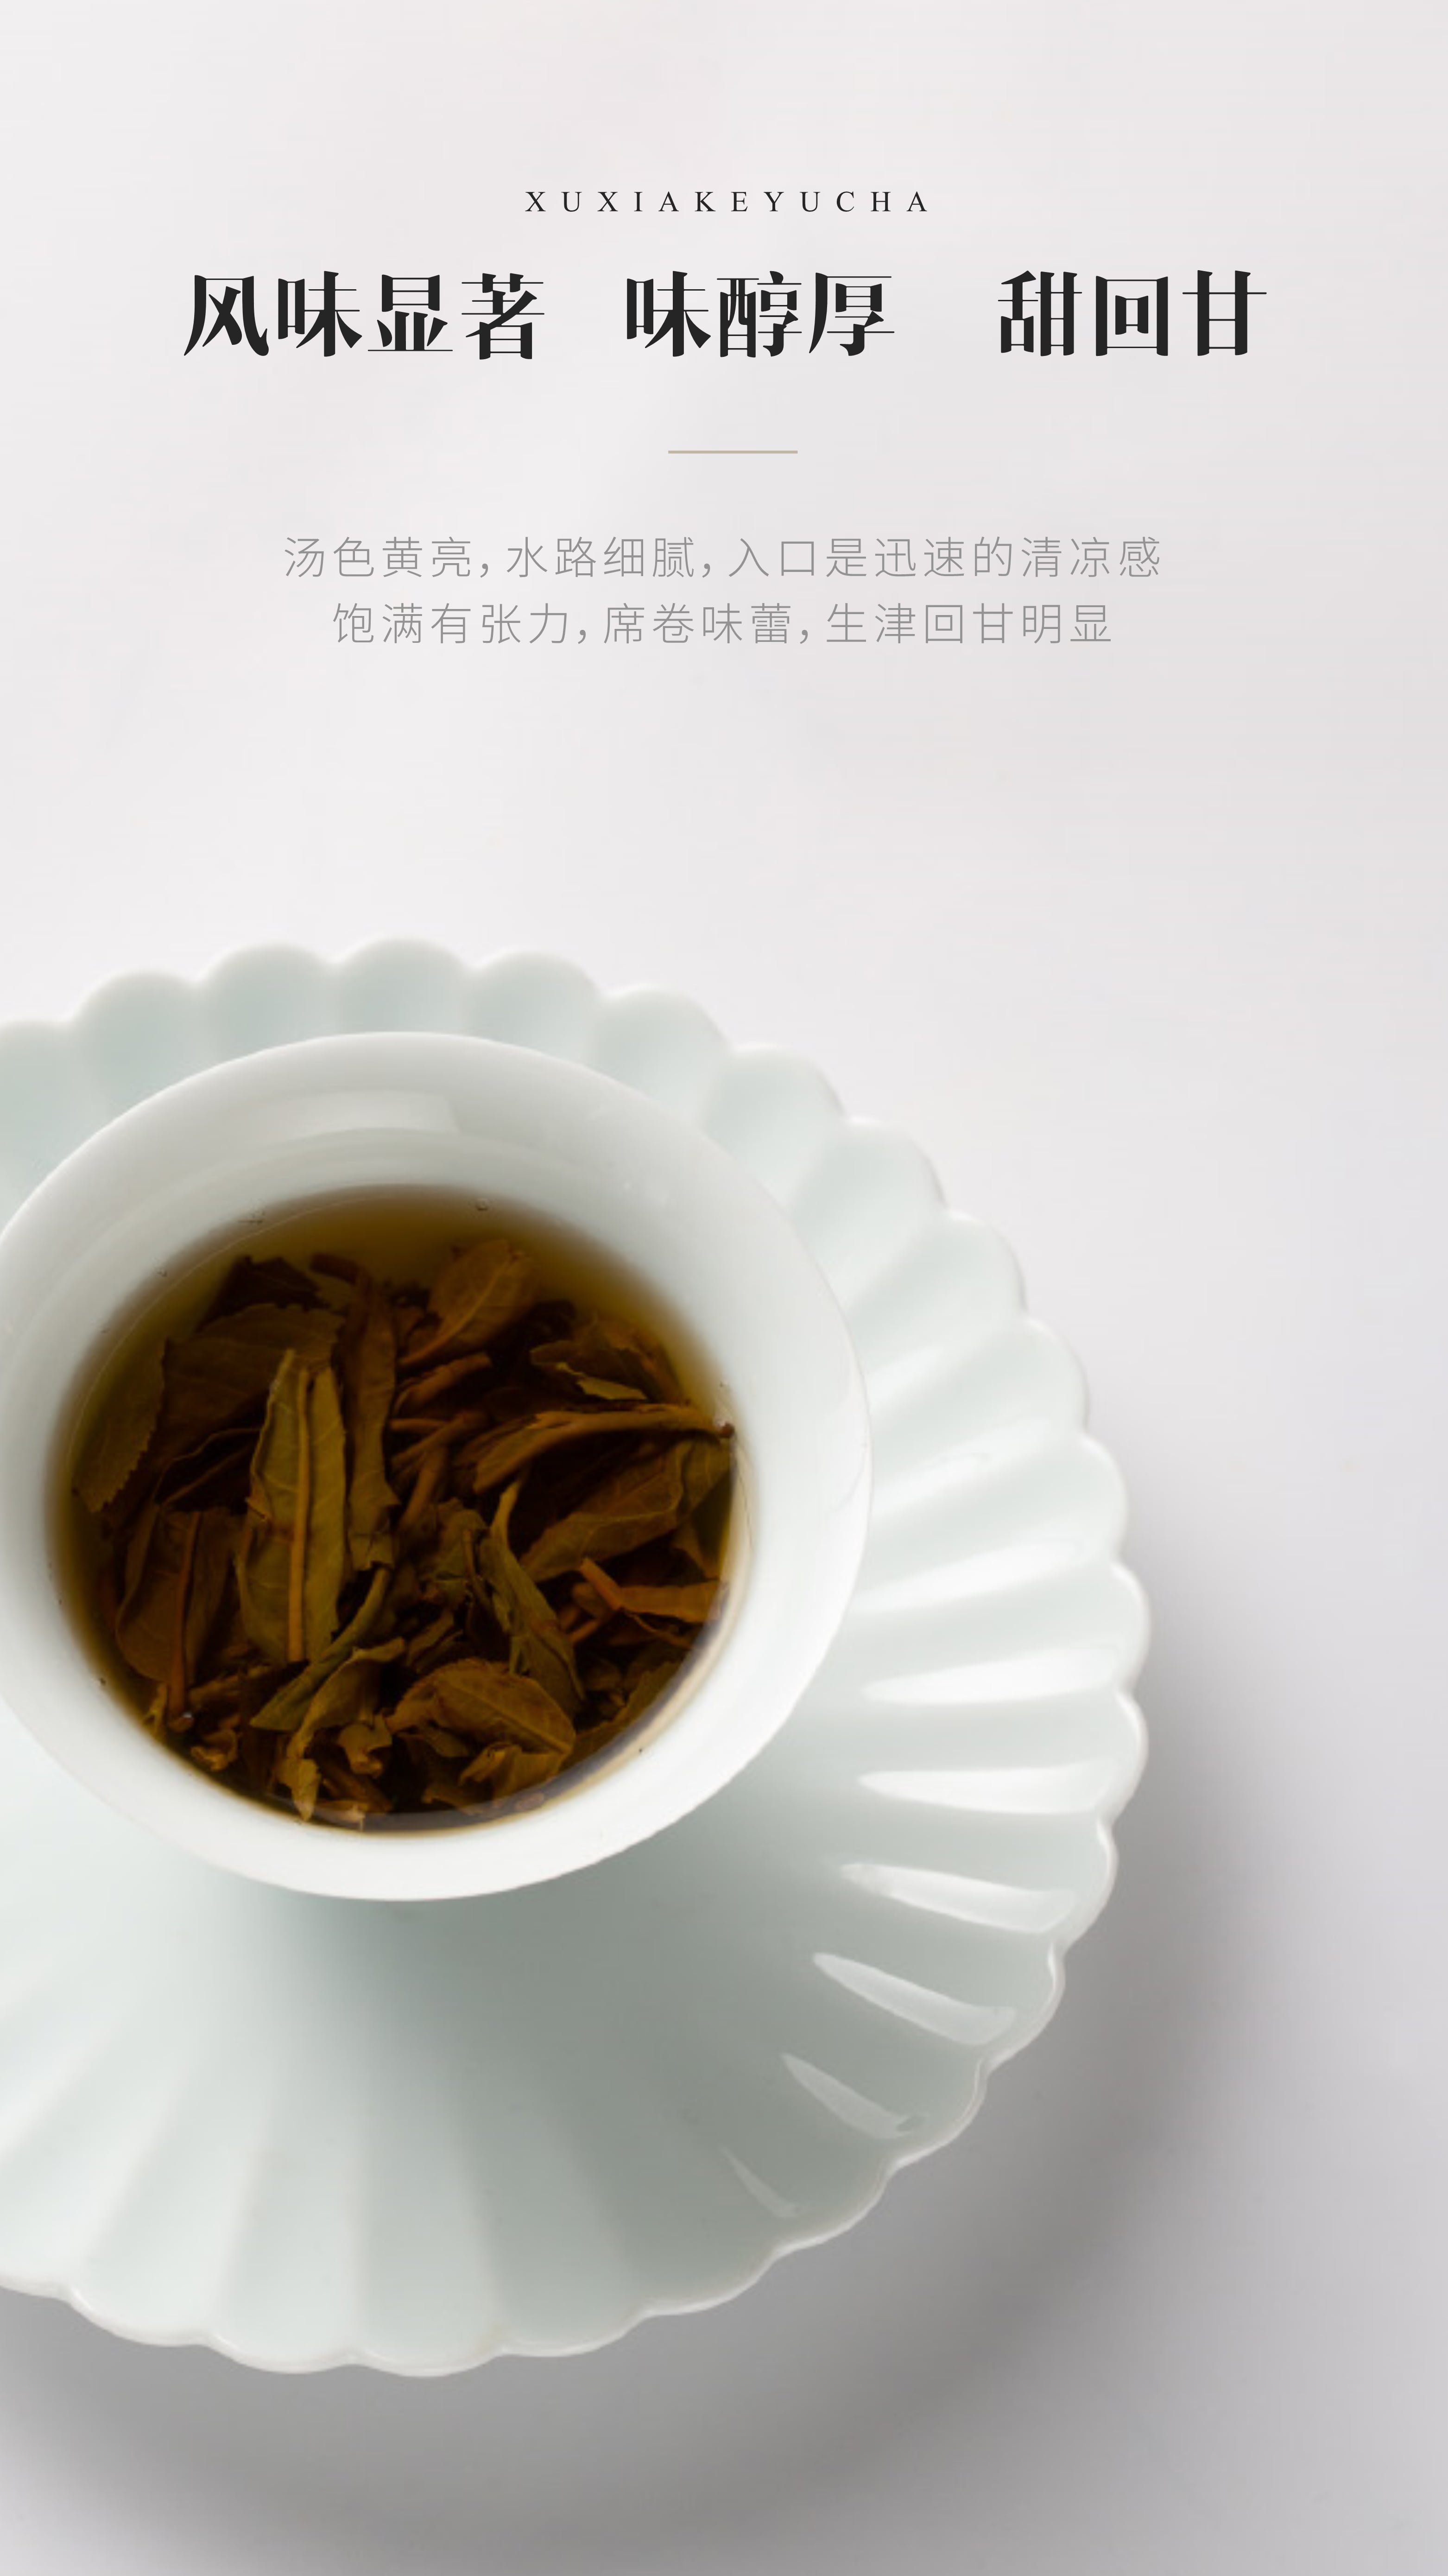 徐霞客饼干茶生茶